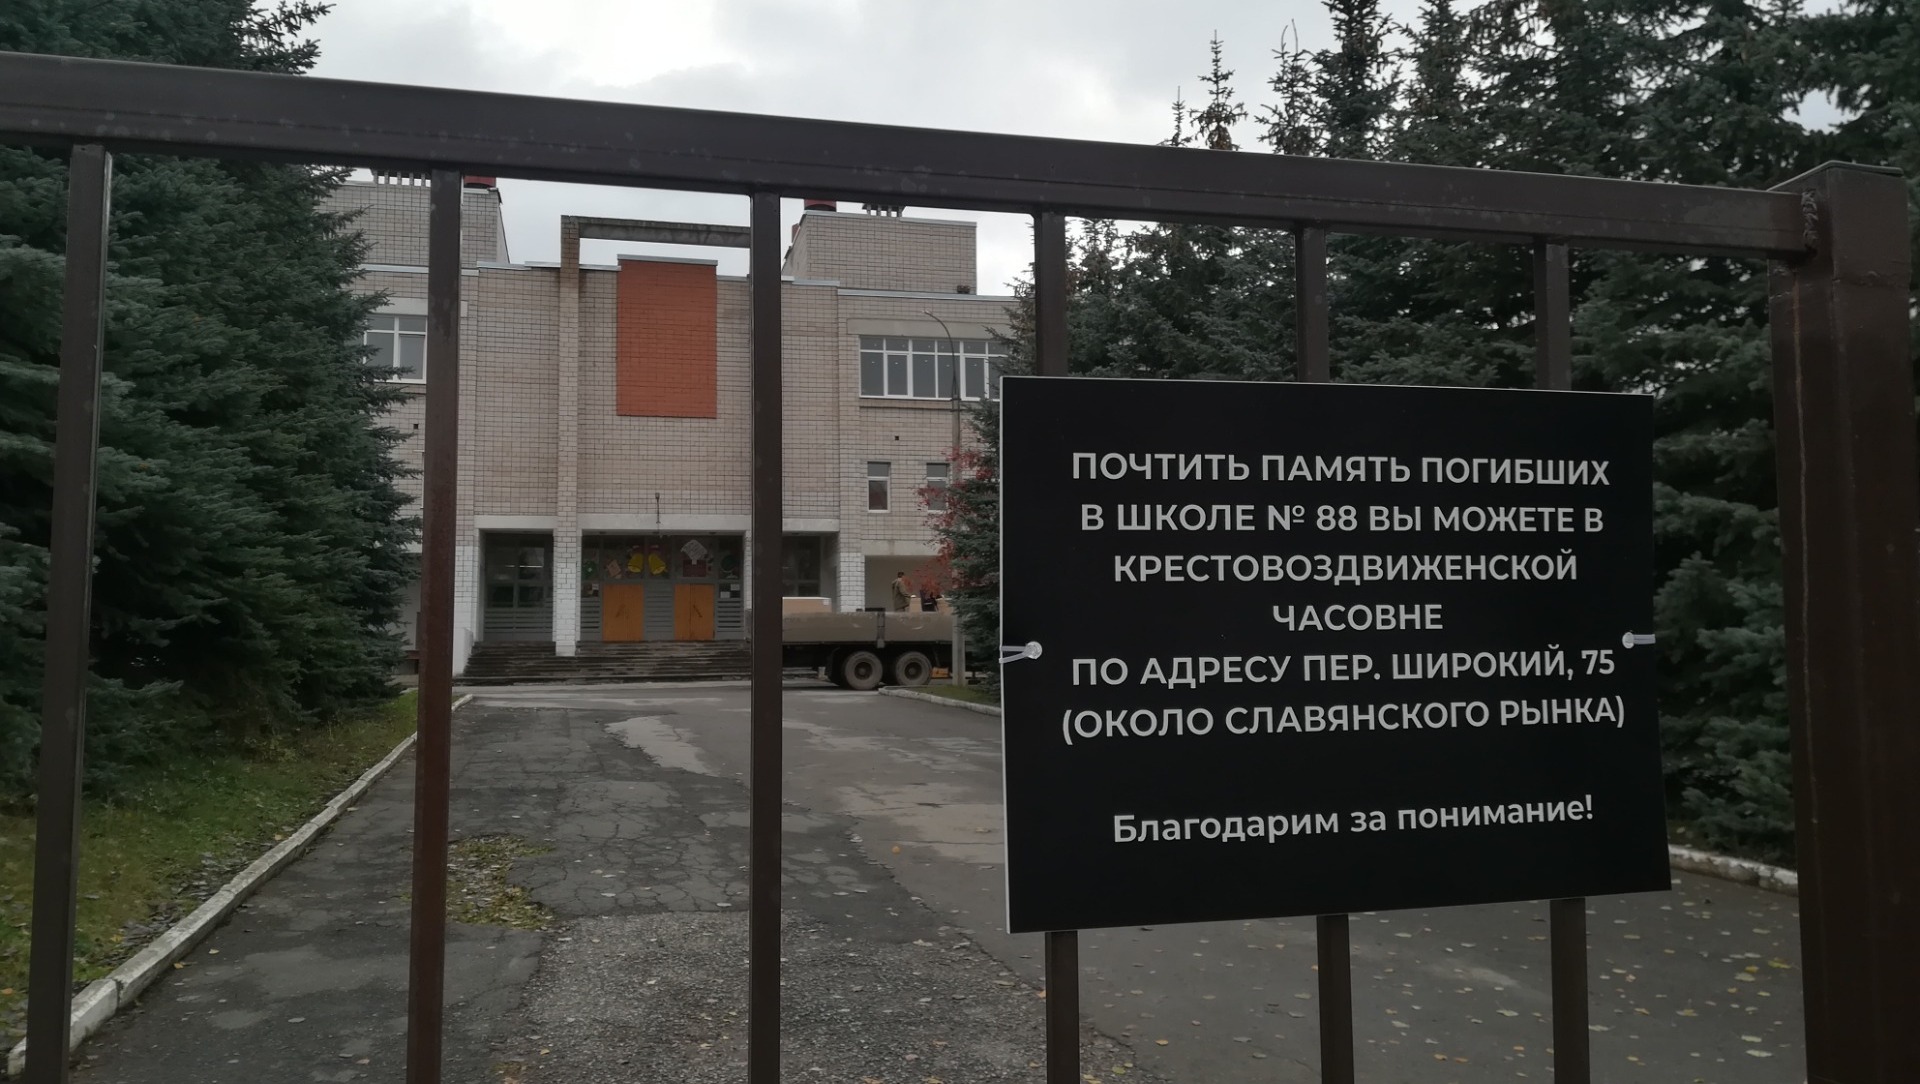 Суд по делу о нападении на школу №88 начнется в Ижевске 6 июля